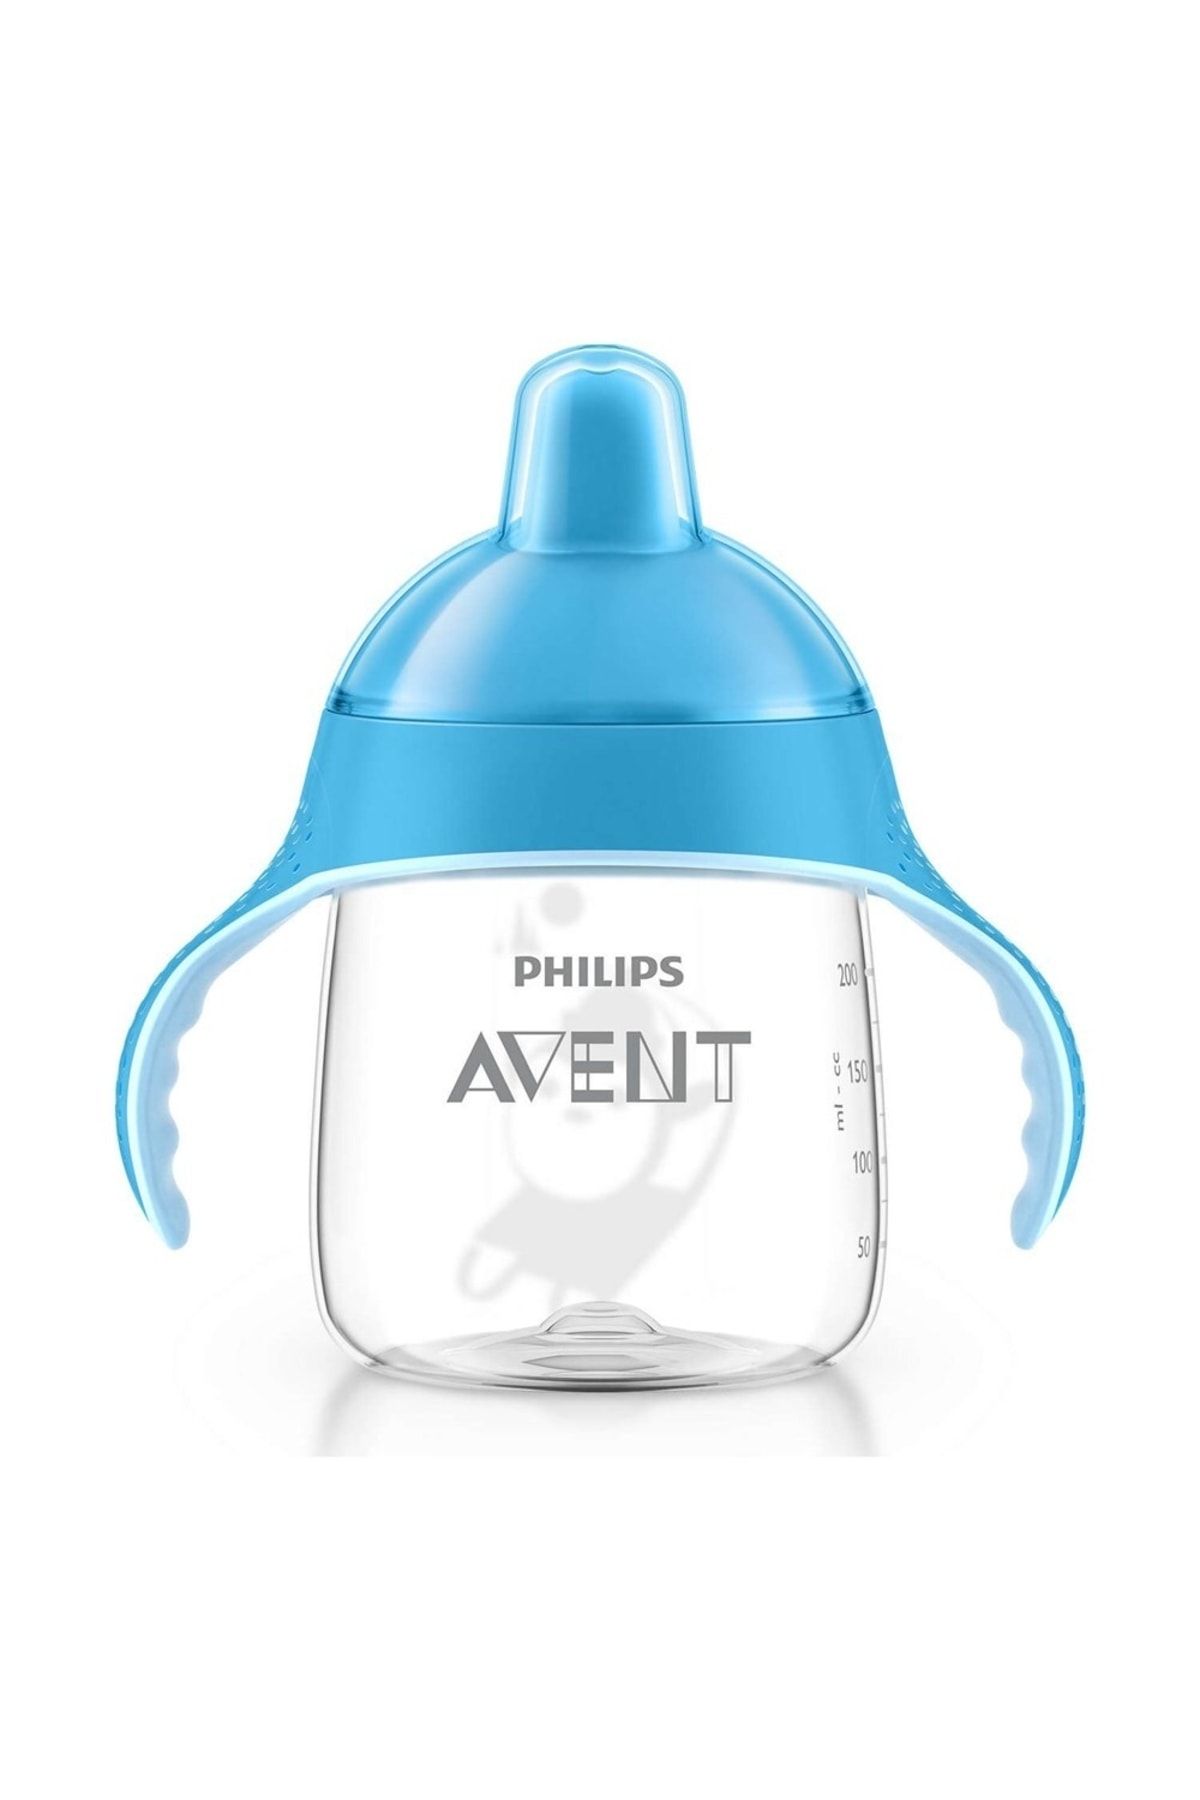 Philips Avent Mavi Yeni Penguen Damlatmaz Alıştırma Bardağı 12m+ 9 Oz/260 ml Scf753/05